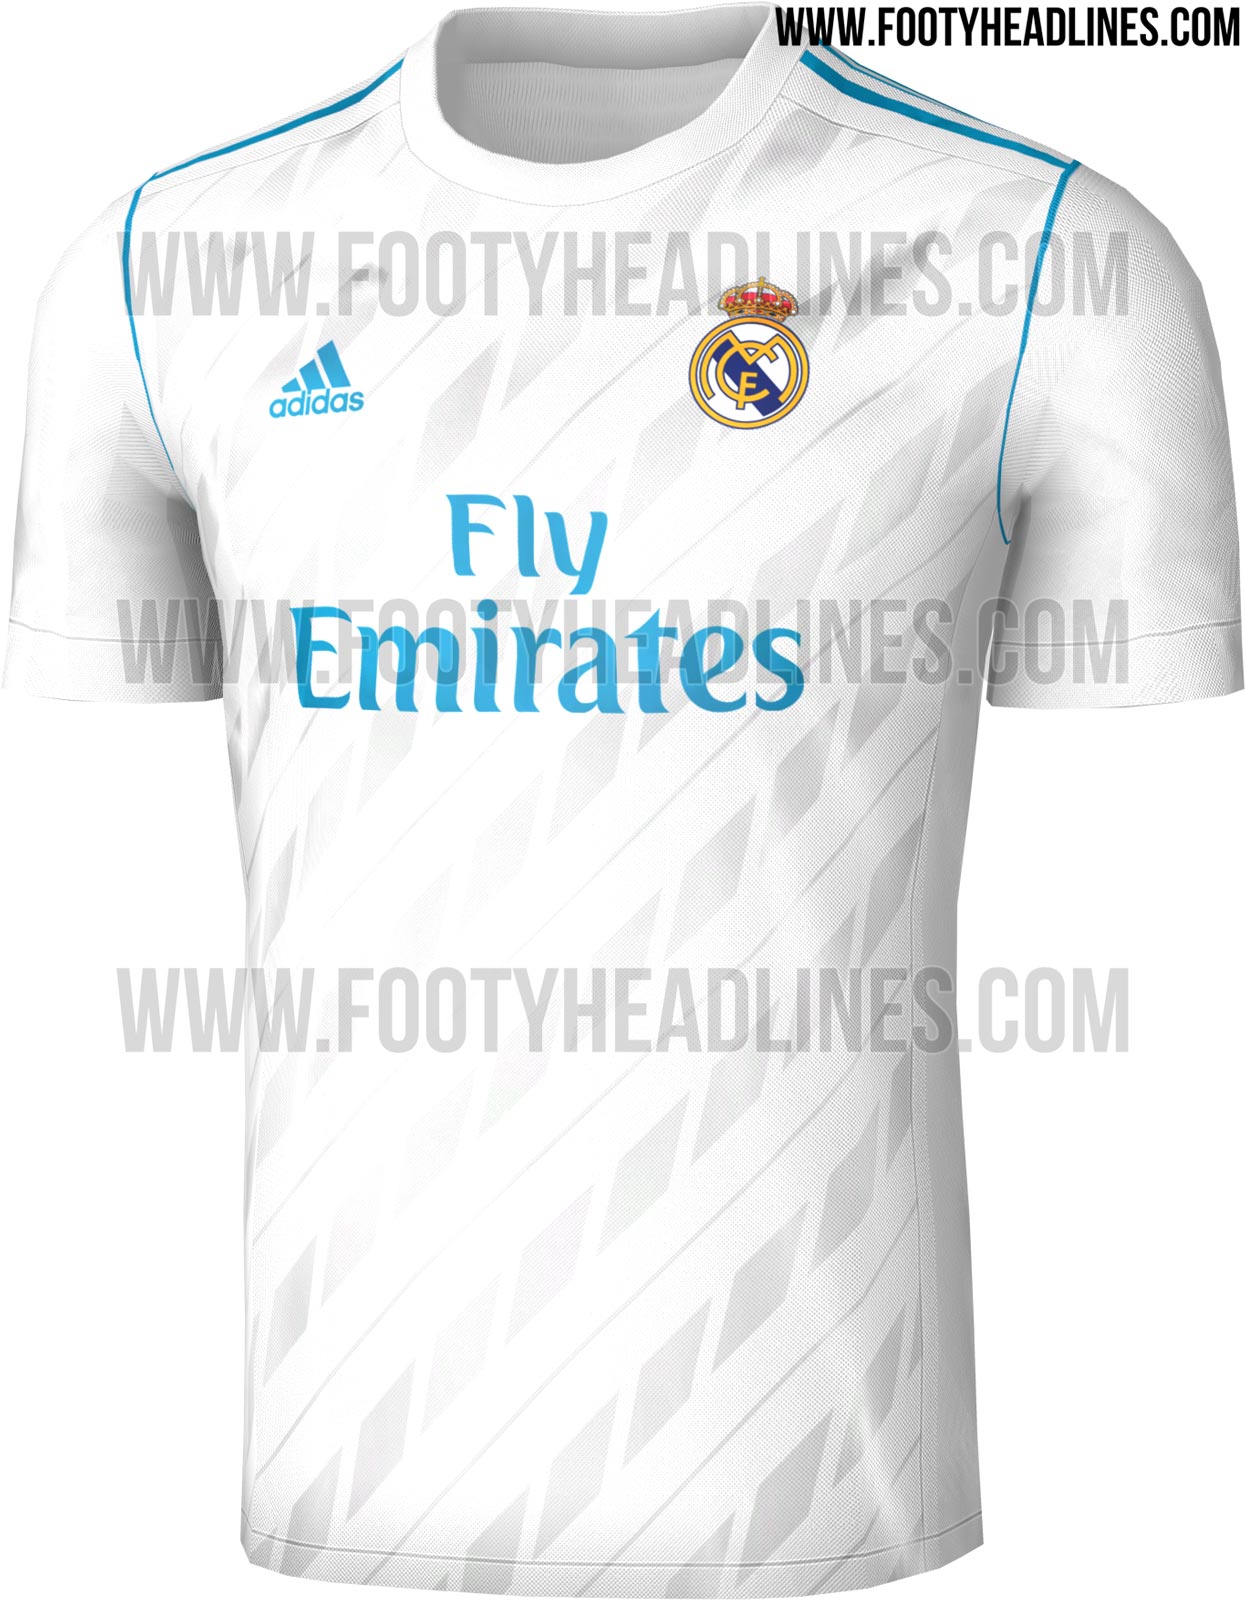 Real Madrid 17-18 Home Kit Leaked - Footy Headlines